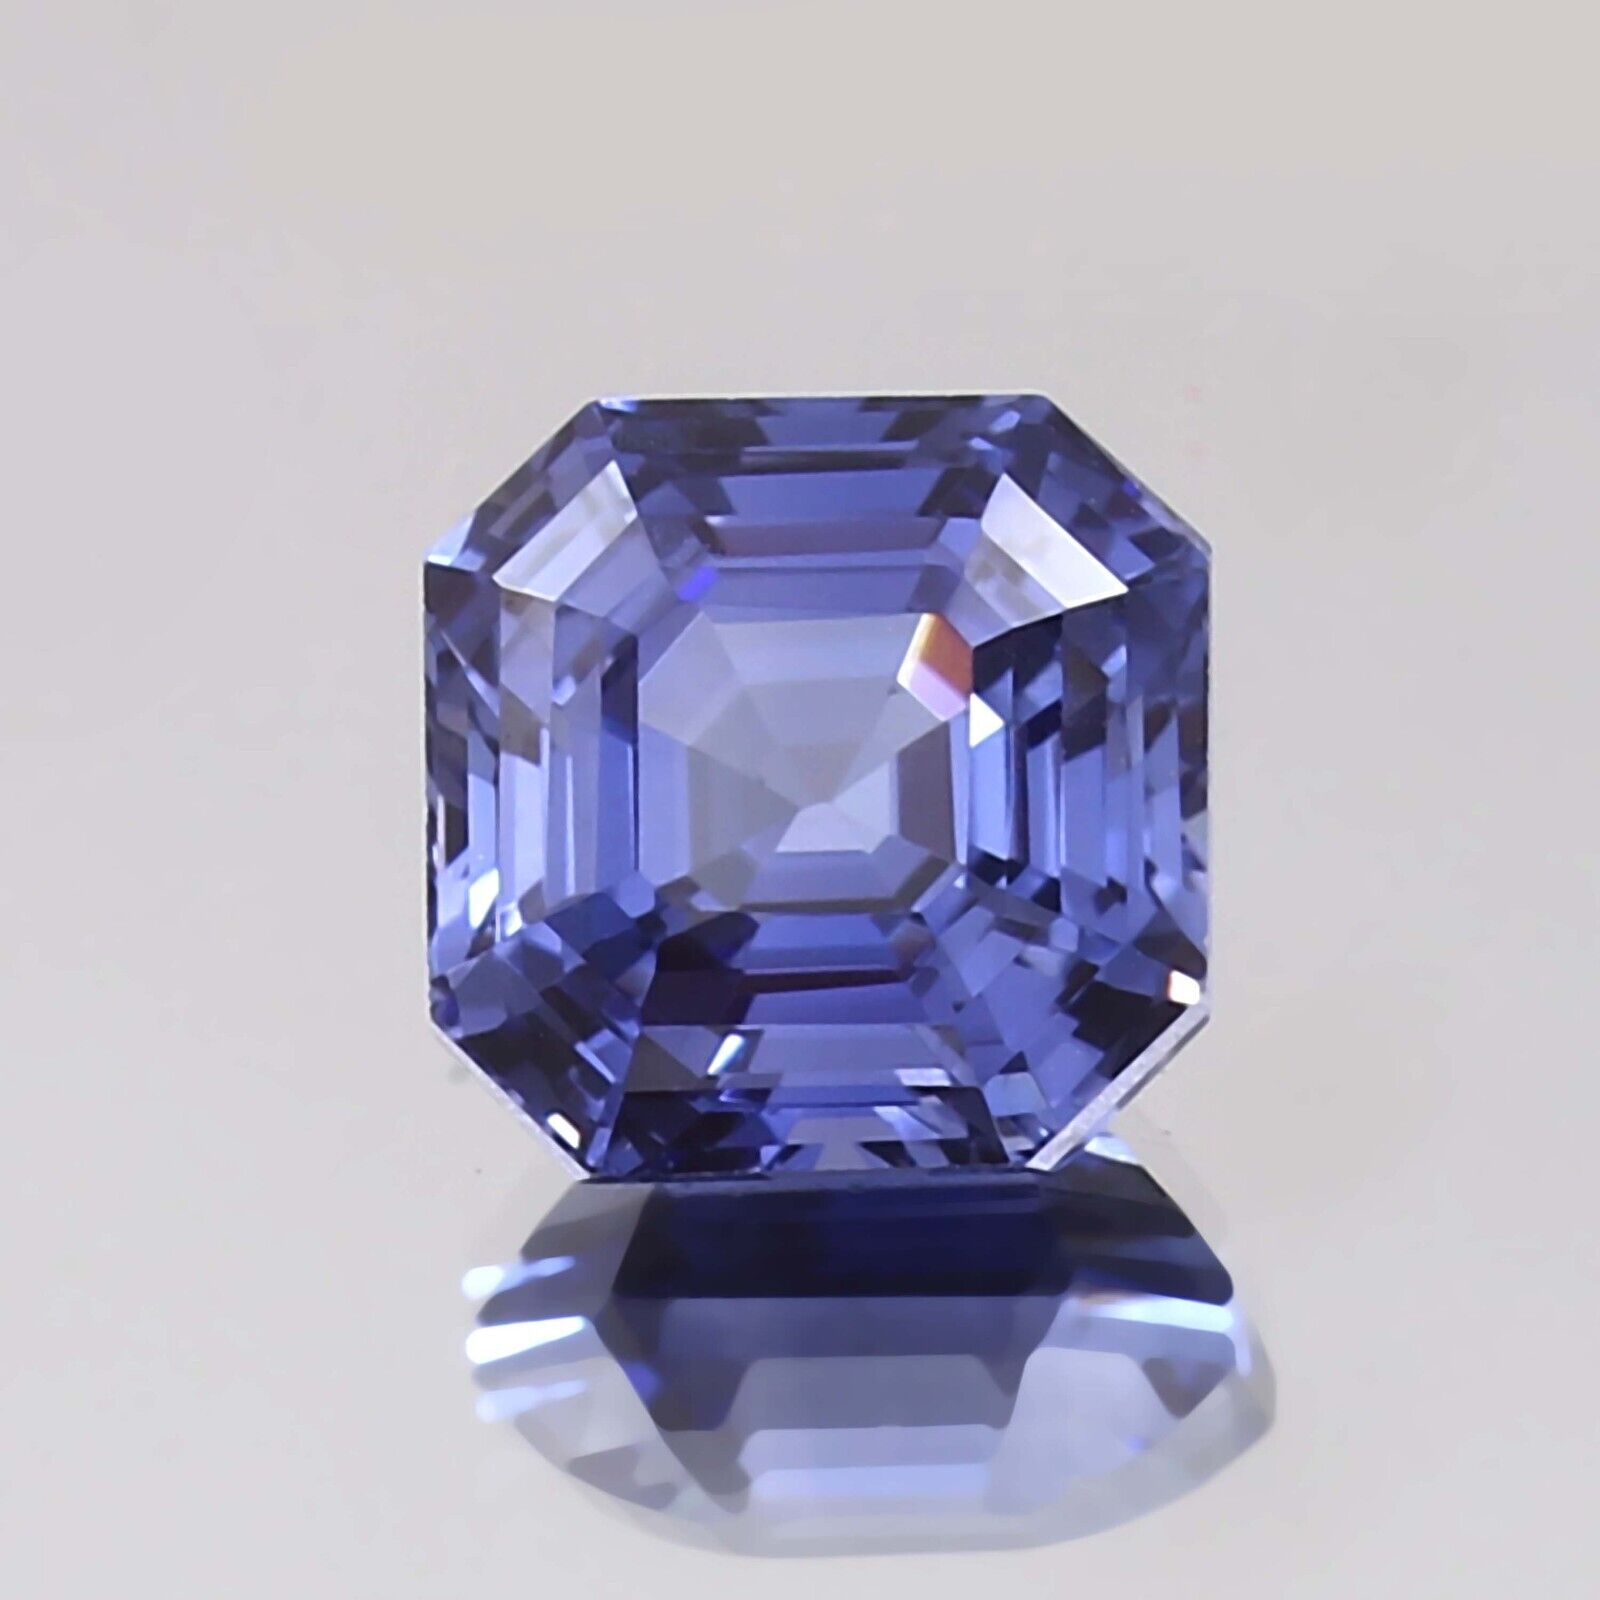 10x10 MM Natural Royal Blue Ceylon Sapphire Asscher Cut Loose Gemstone